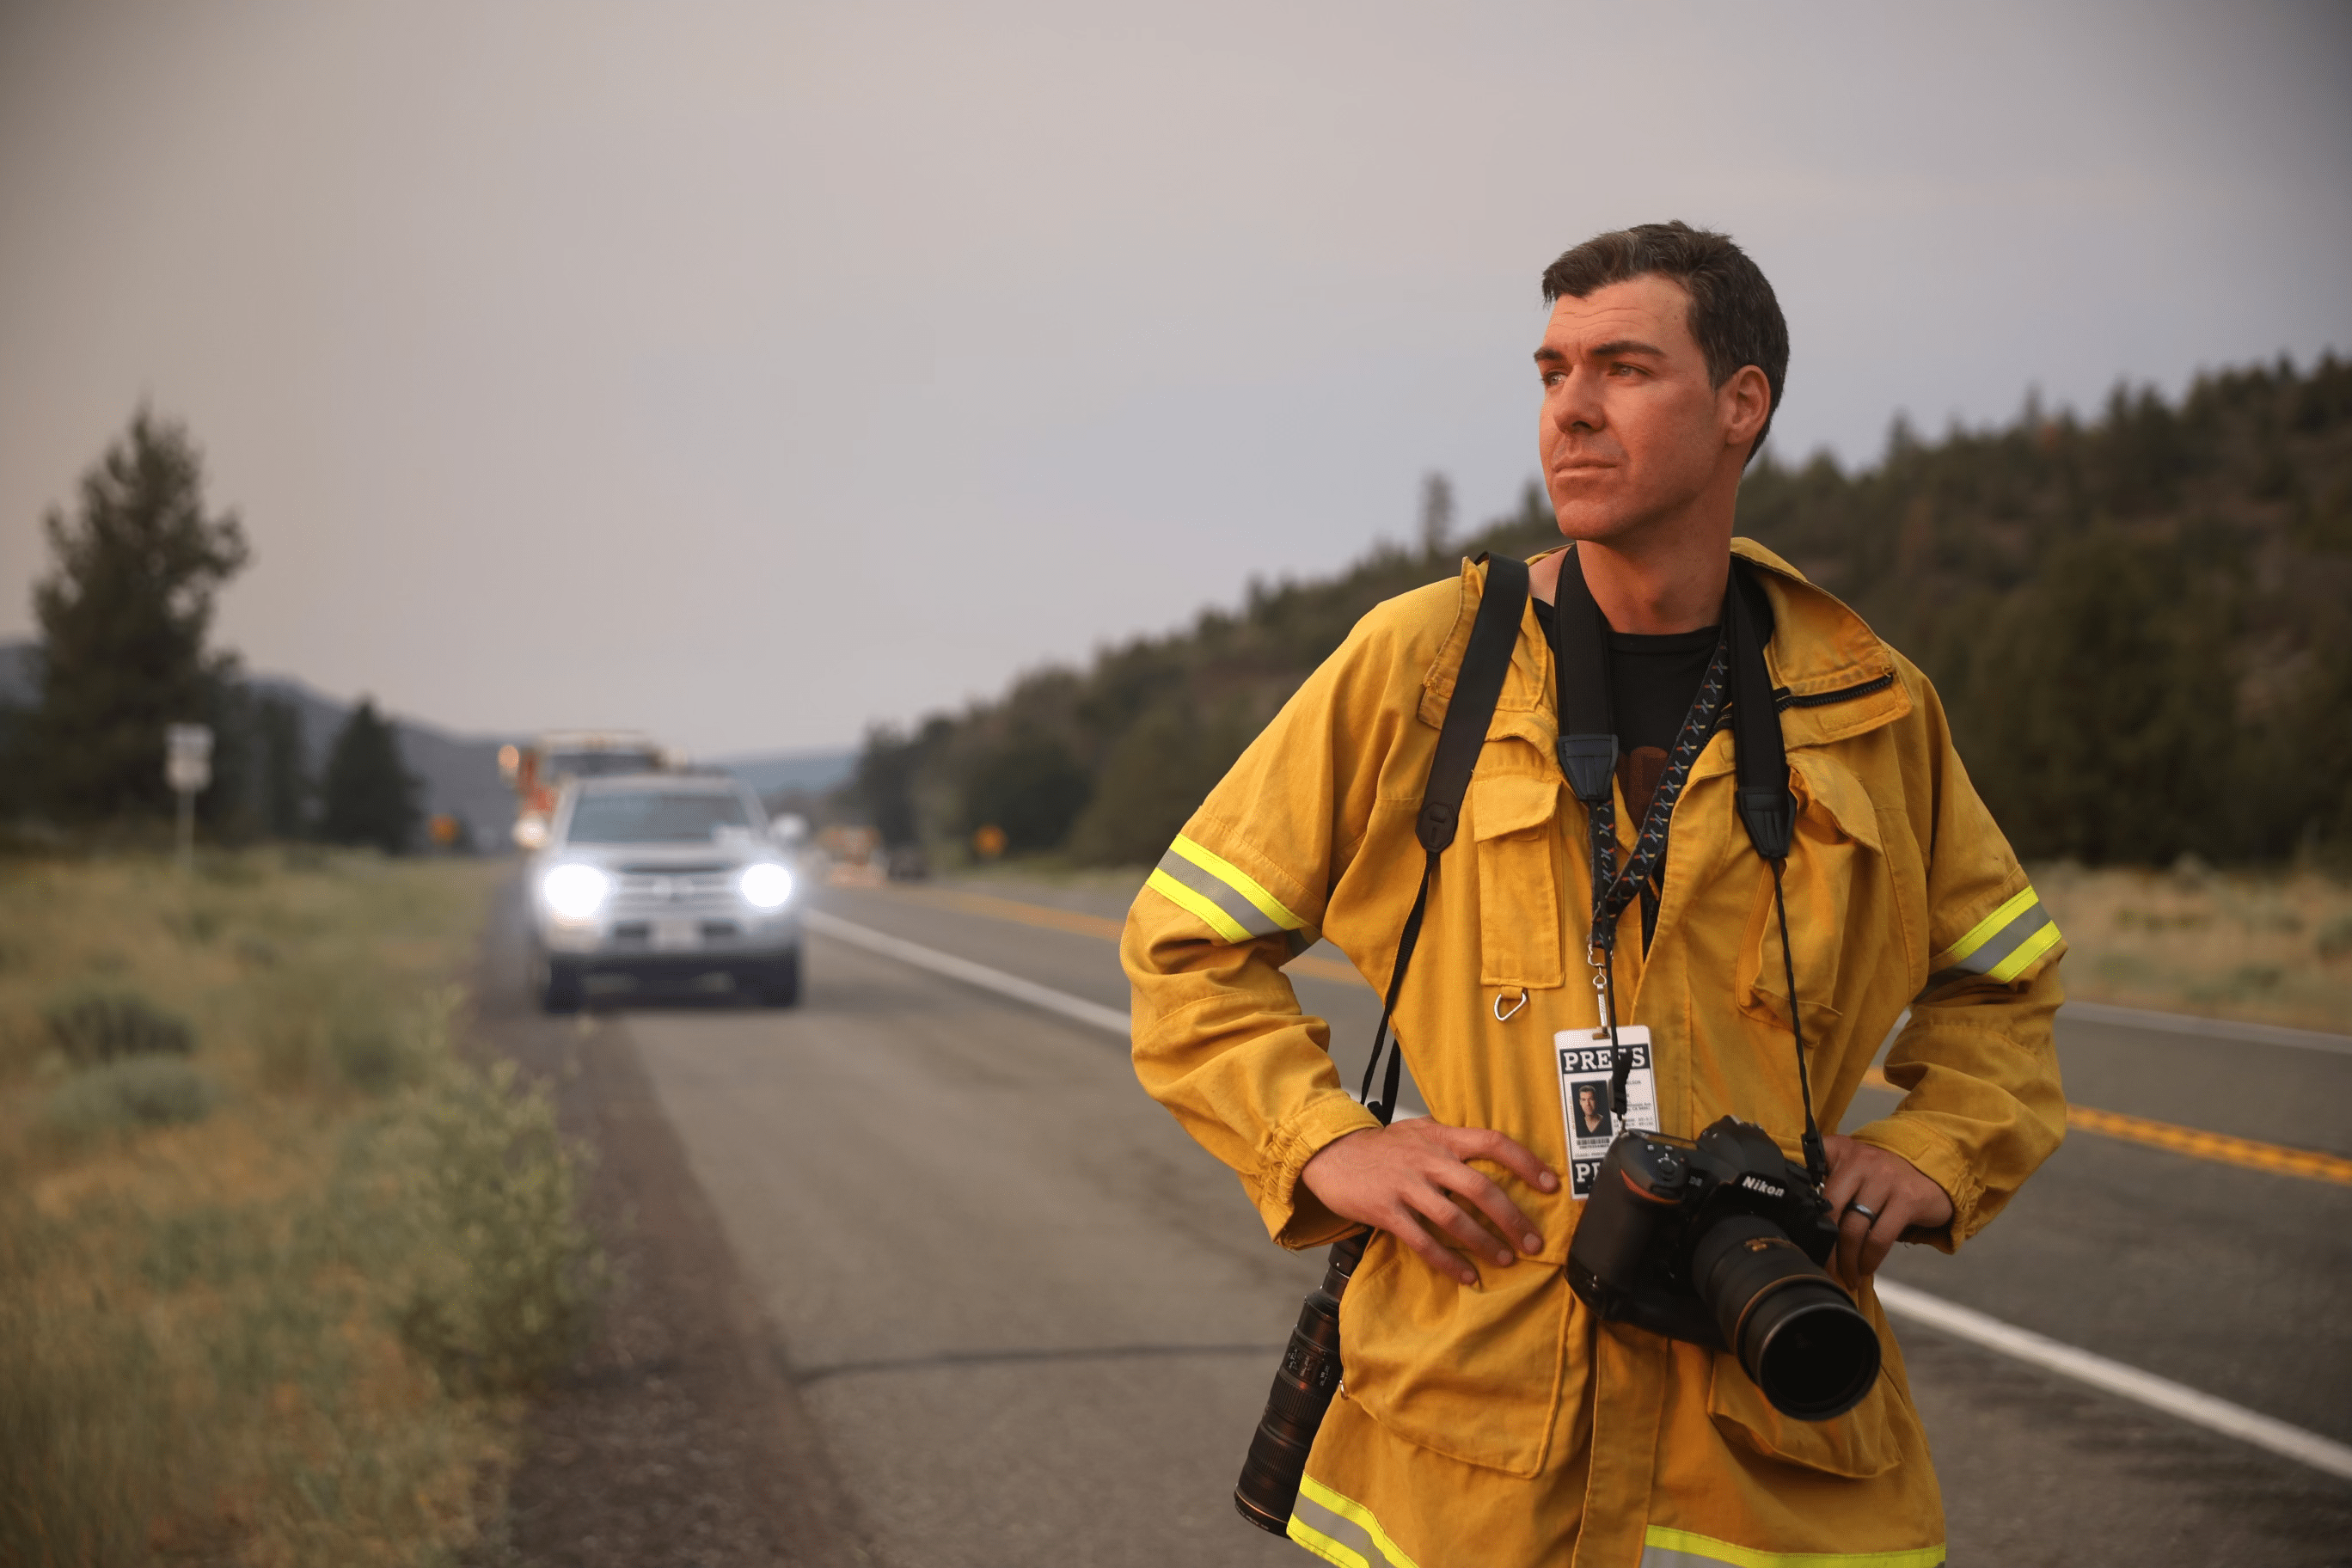 Fotograf Josh Edelson ser ud over landskabet, mens han står på vejen med et kamera og et presseskilt om halsen.